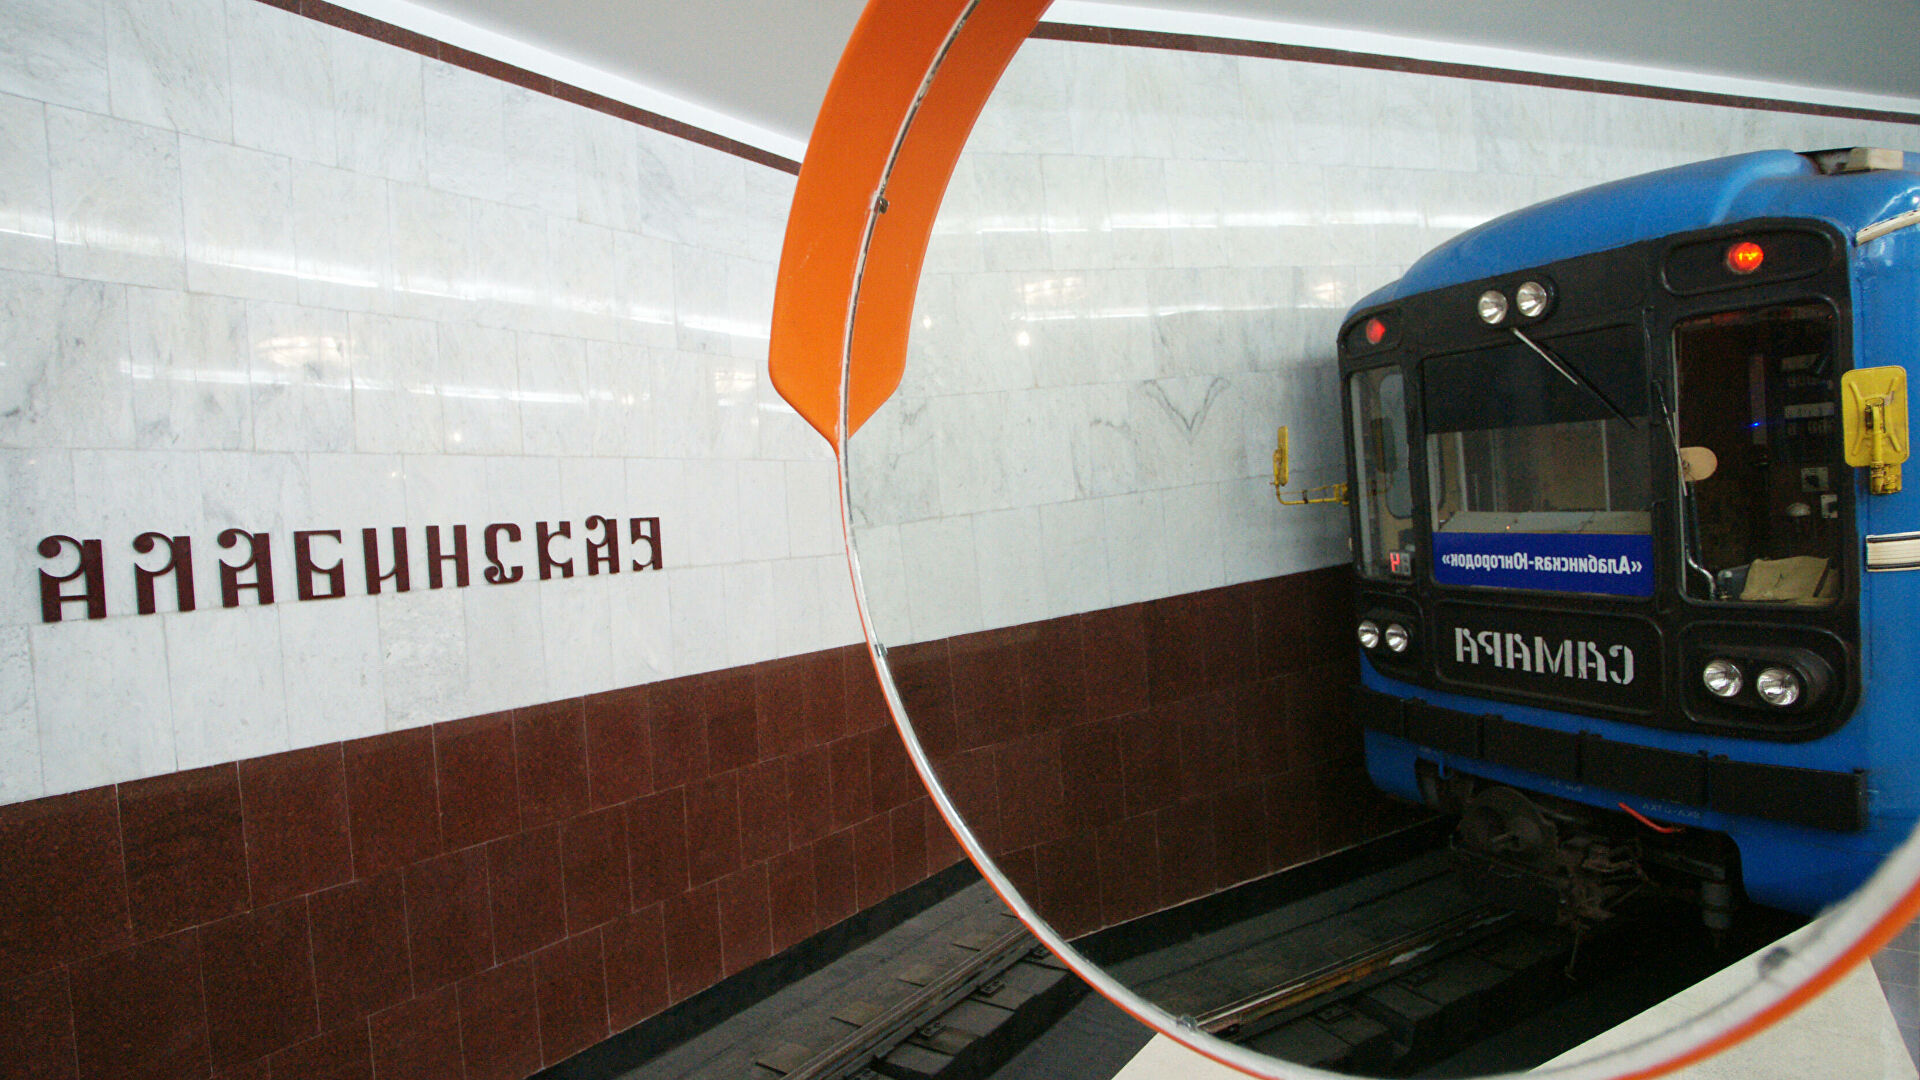 Хуснуллин: в 2022 году метро будут строить в Нижнем Новгороде, Самаре и Челябинске